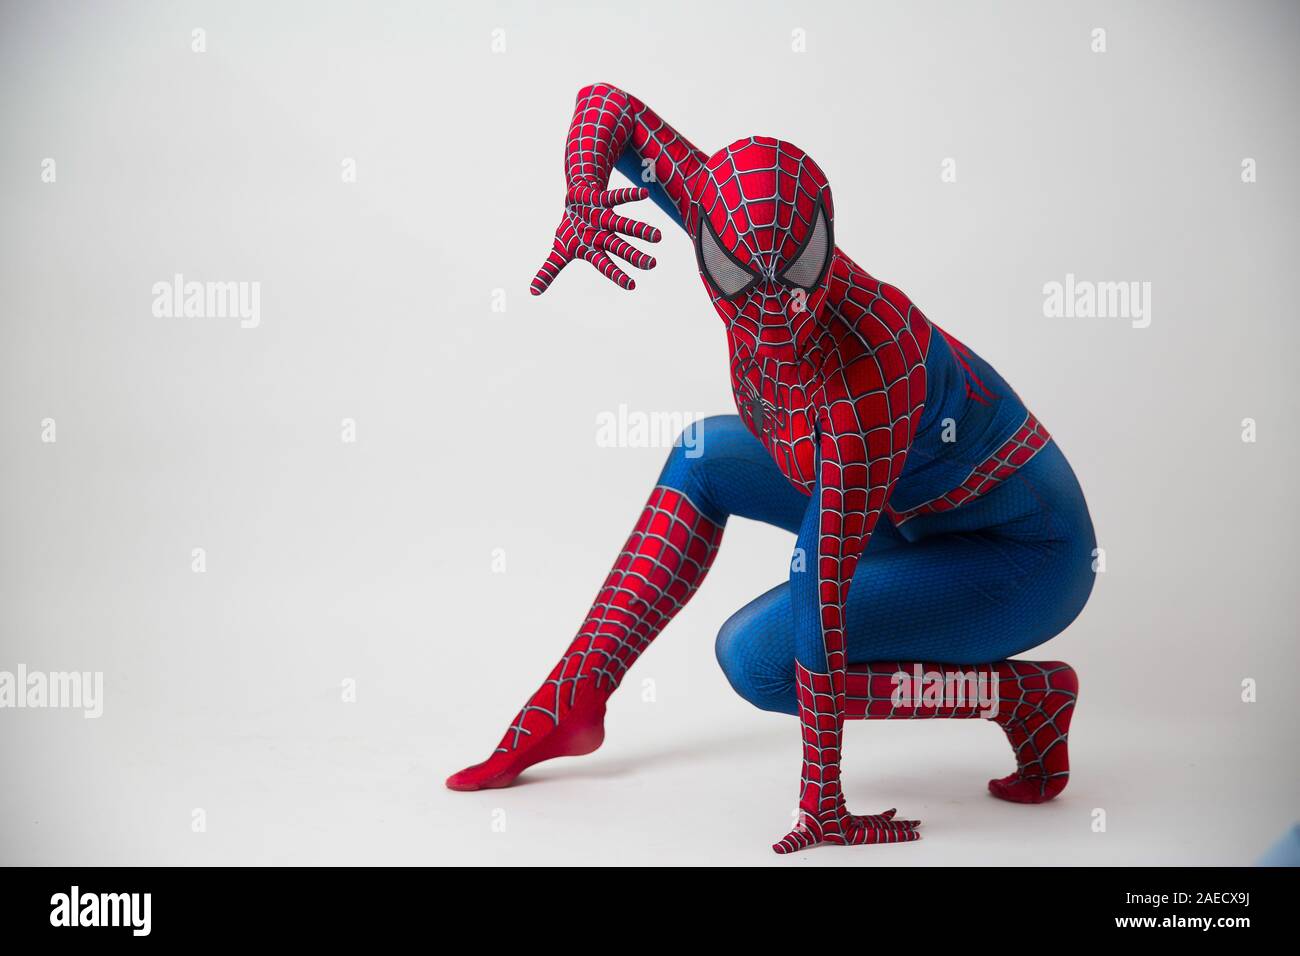 1 dicembre 2019. Israele, Tel Aviv. Spider-man in posa su sfondo bianco Foto Stock